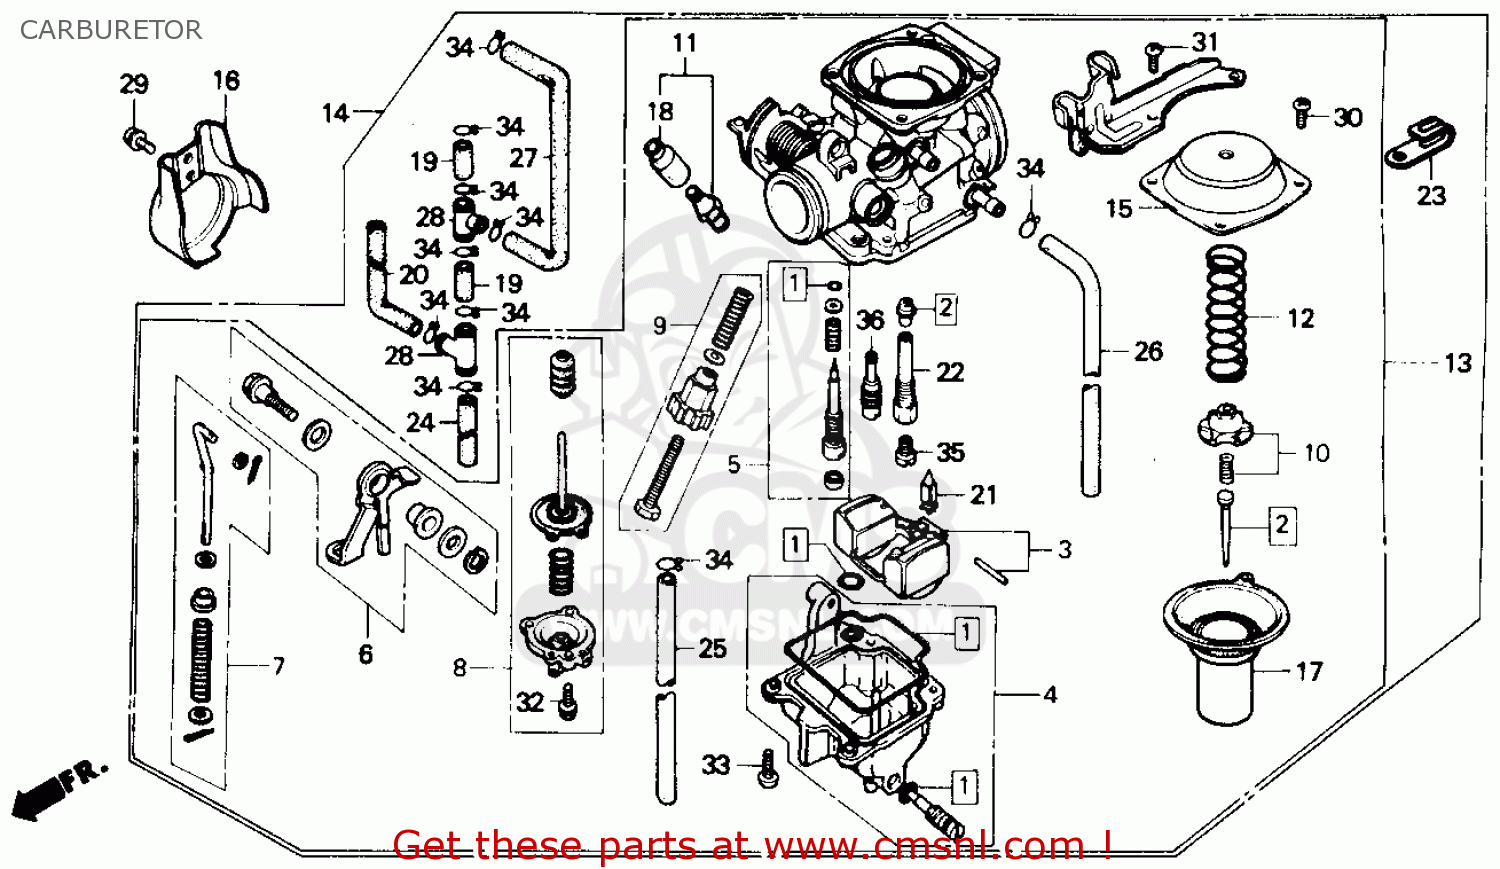 1985 Honda rebel carburetor rebuild kit #2